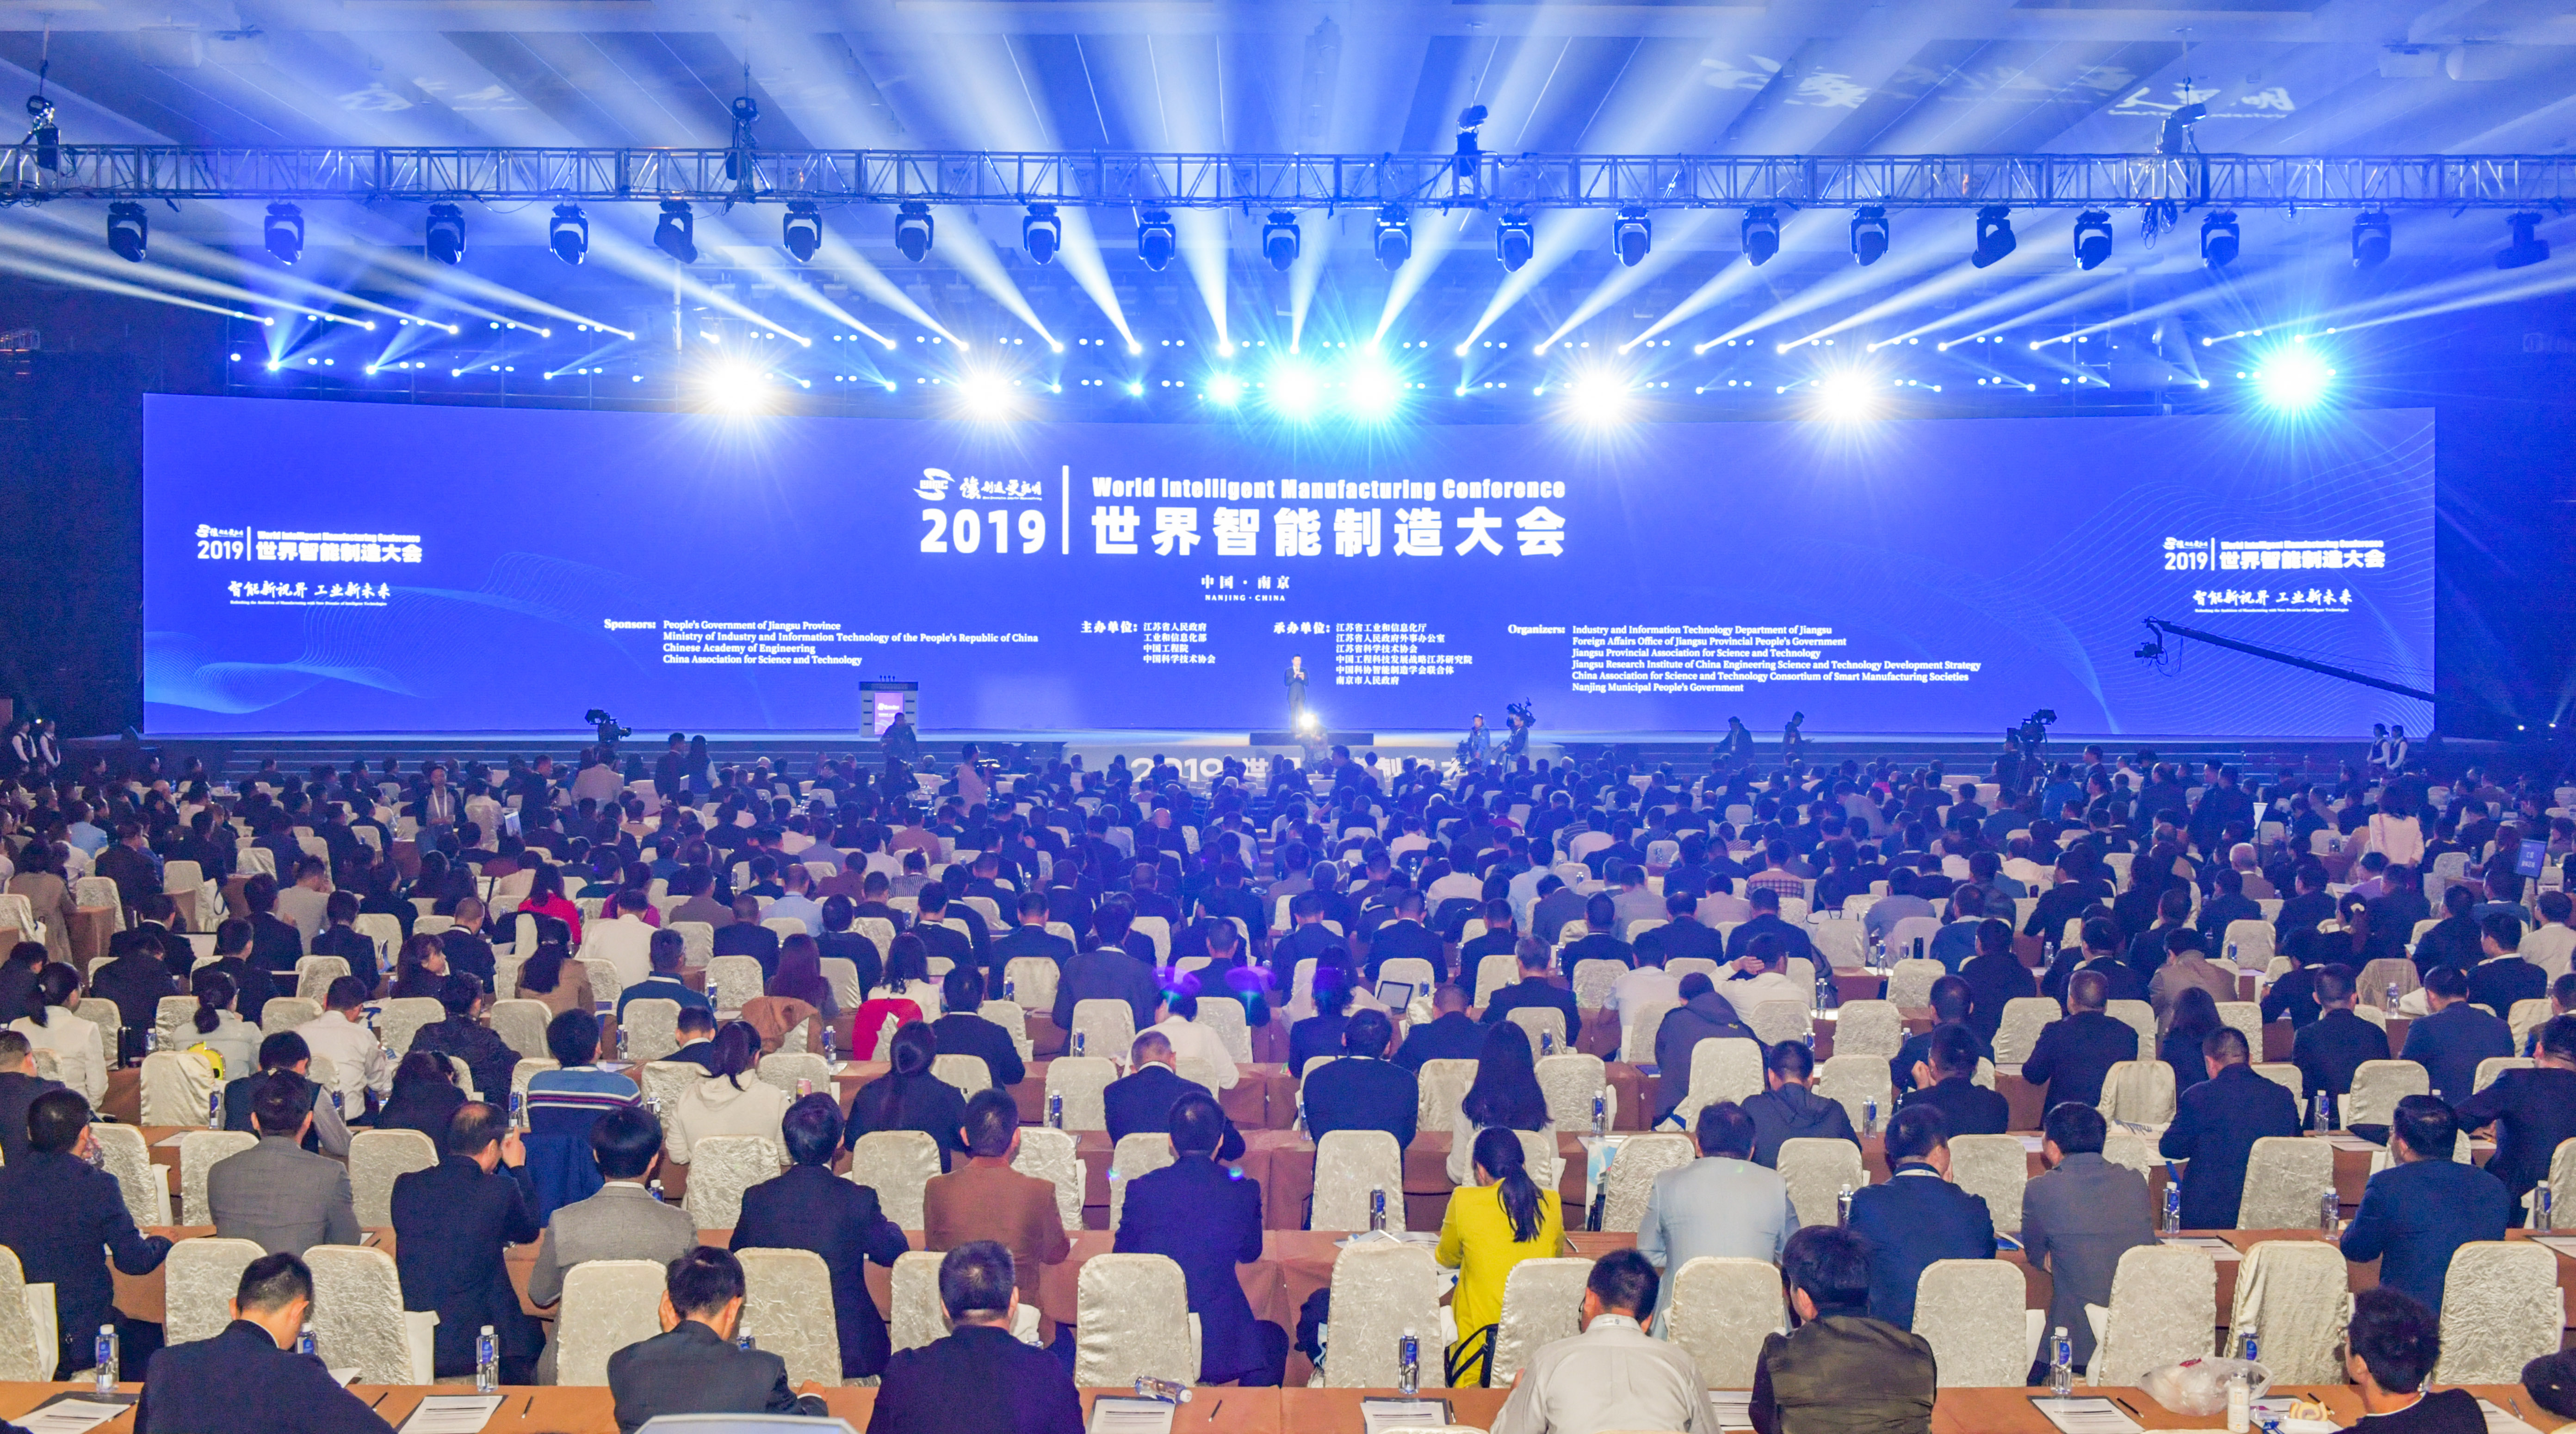 智能新视界 工业新未来,2019世界智能制造大会18日在南京开幕